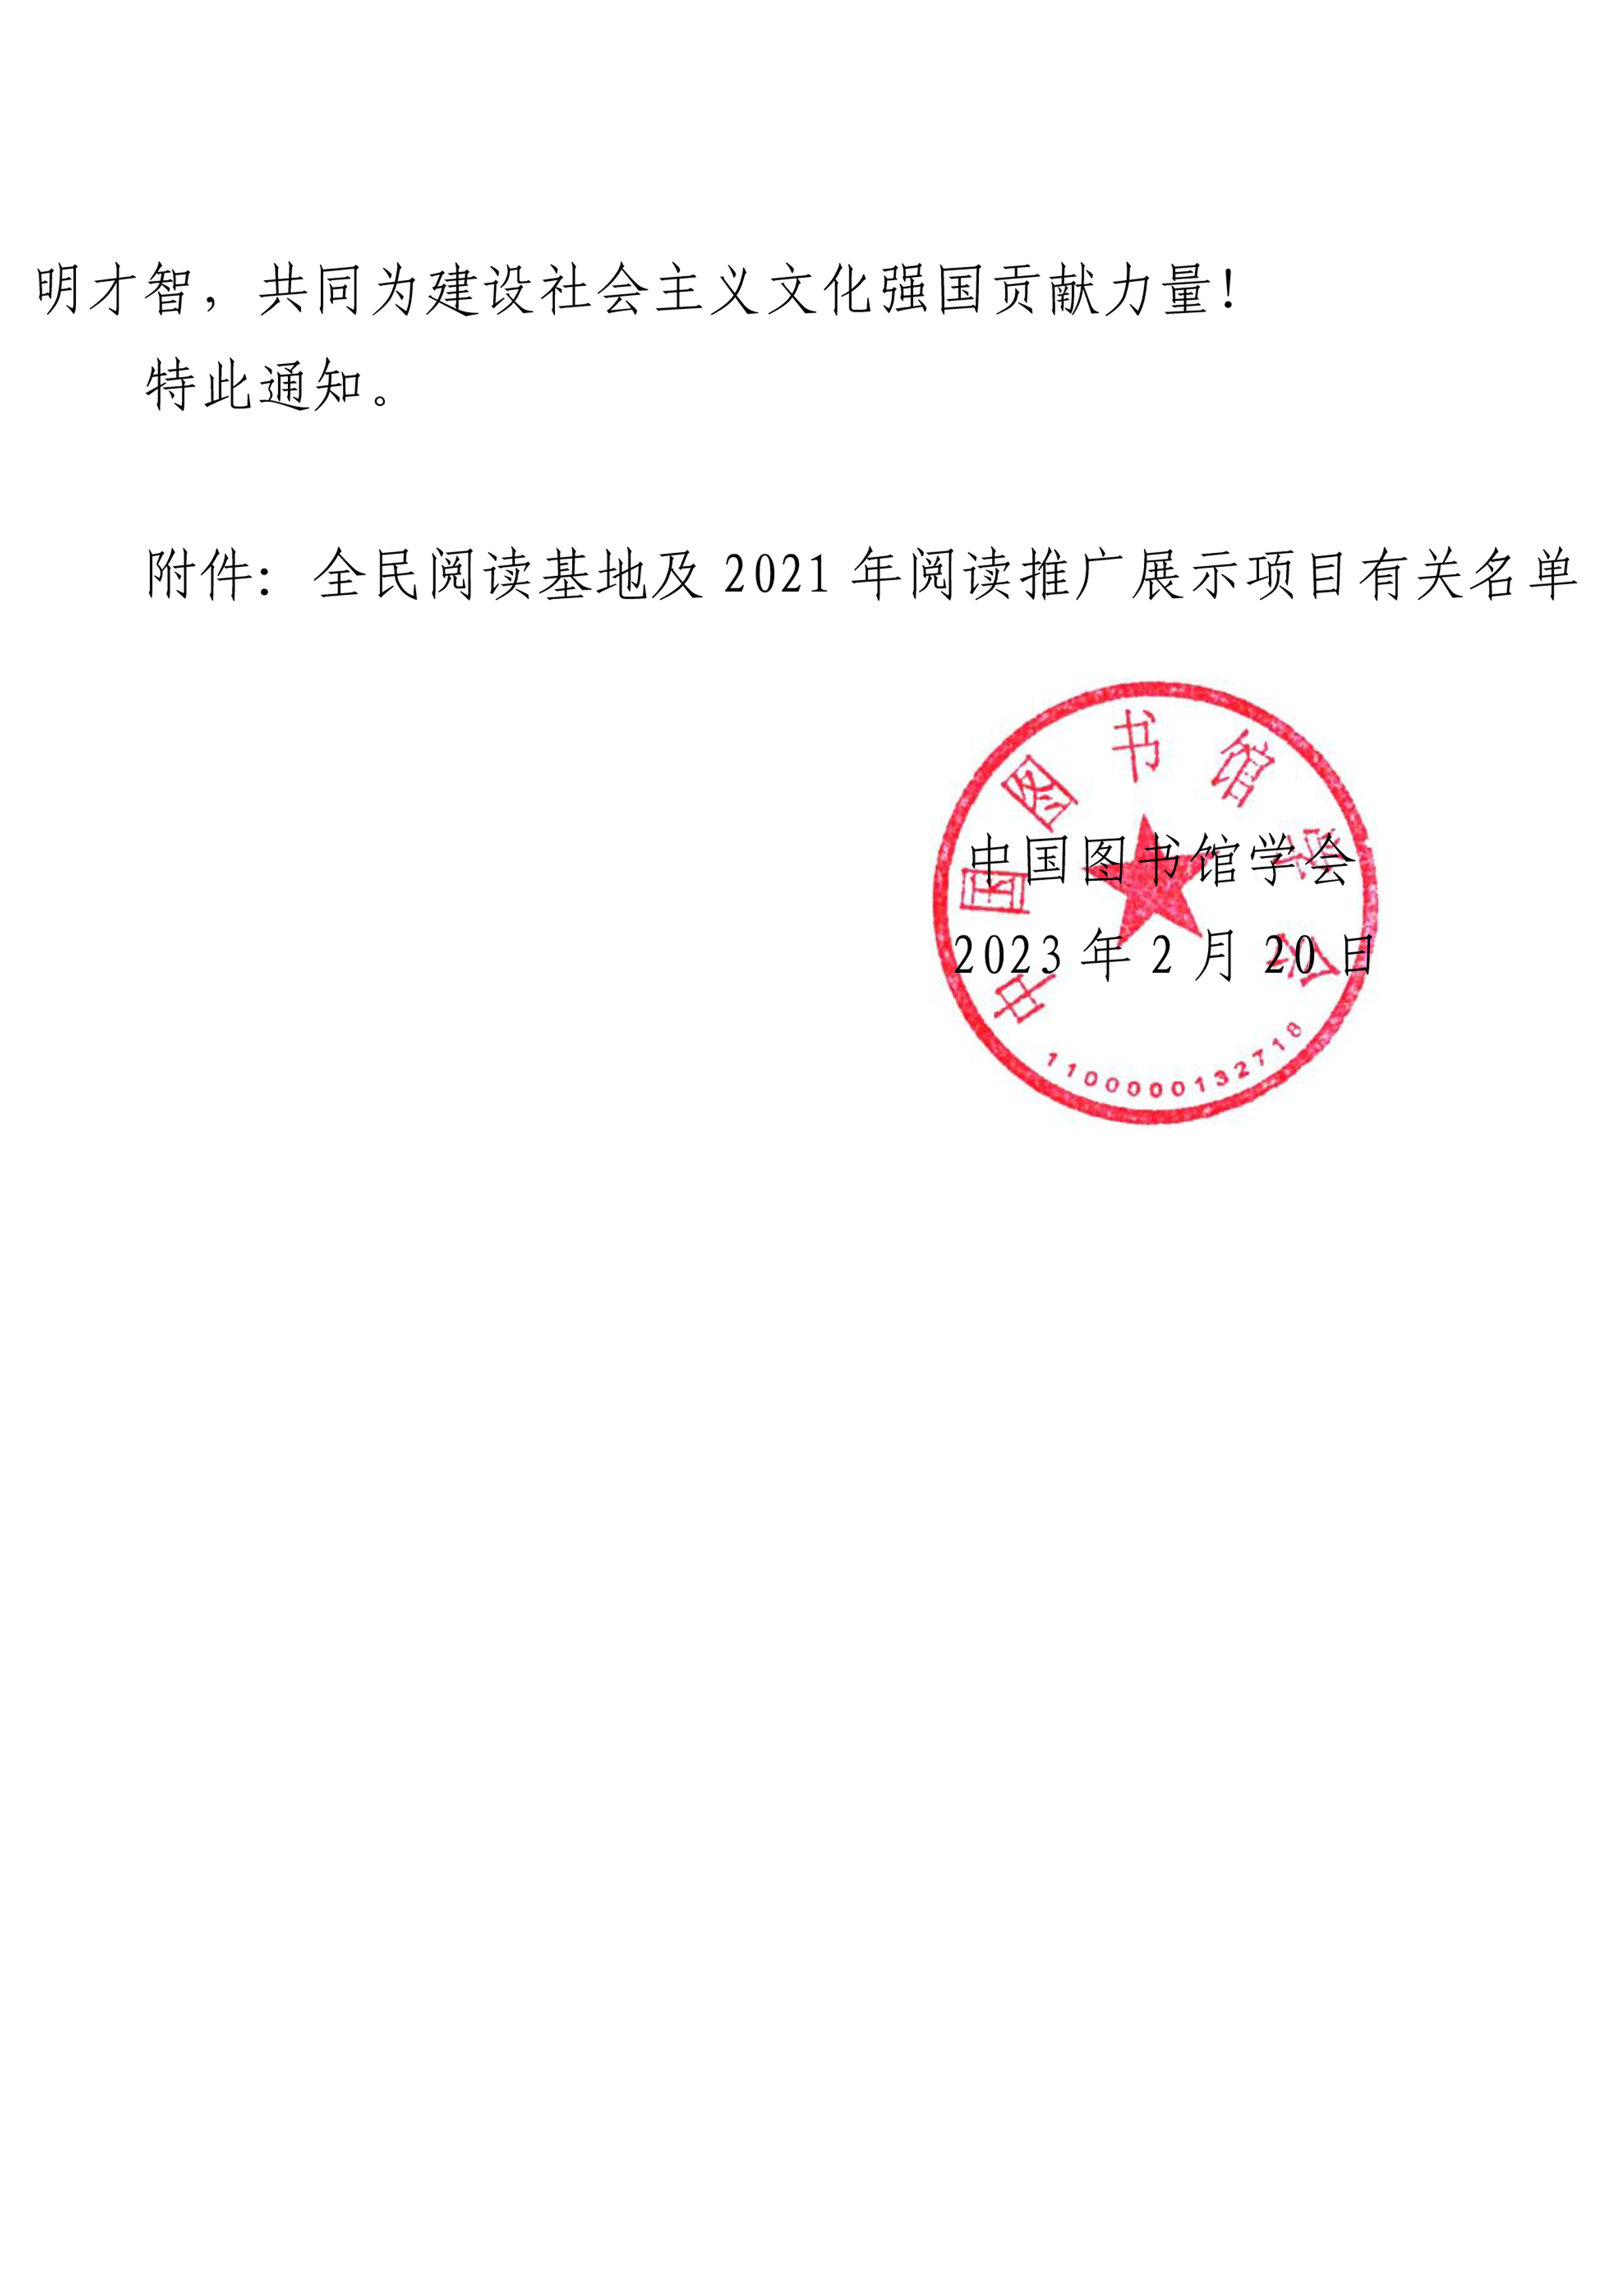 中国图书馆学会关于公布2021年全民阅读工作有关名单的通知-2